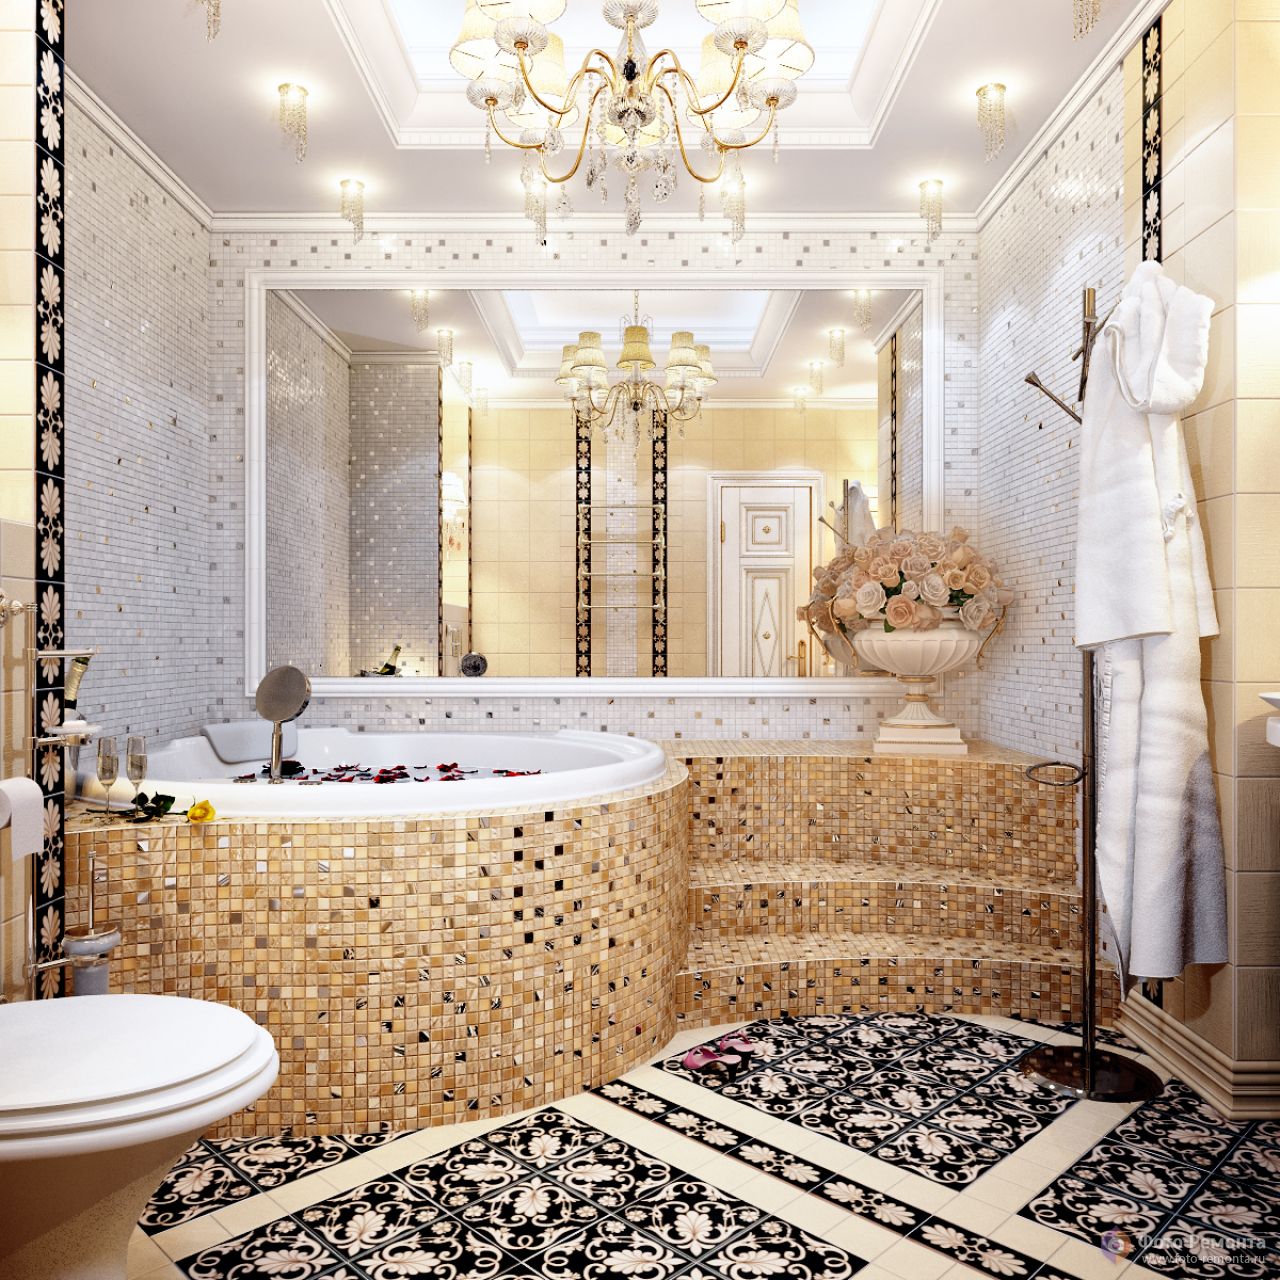 Варианты использования мозаики для облицовки стен в ванной комнате